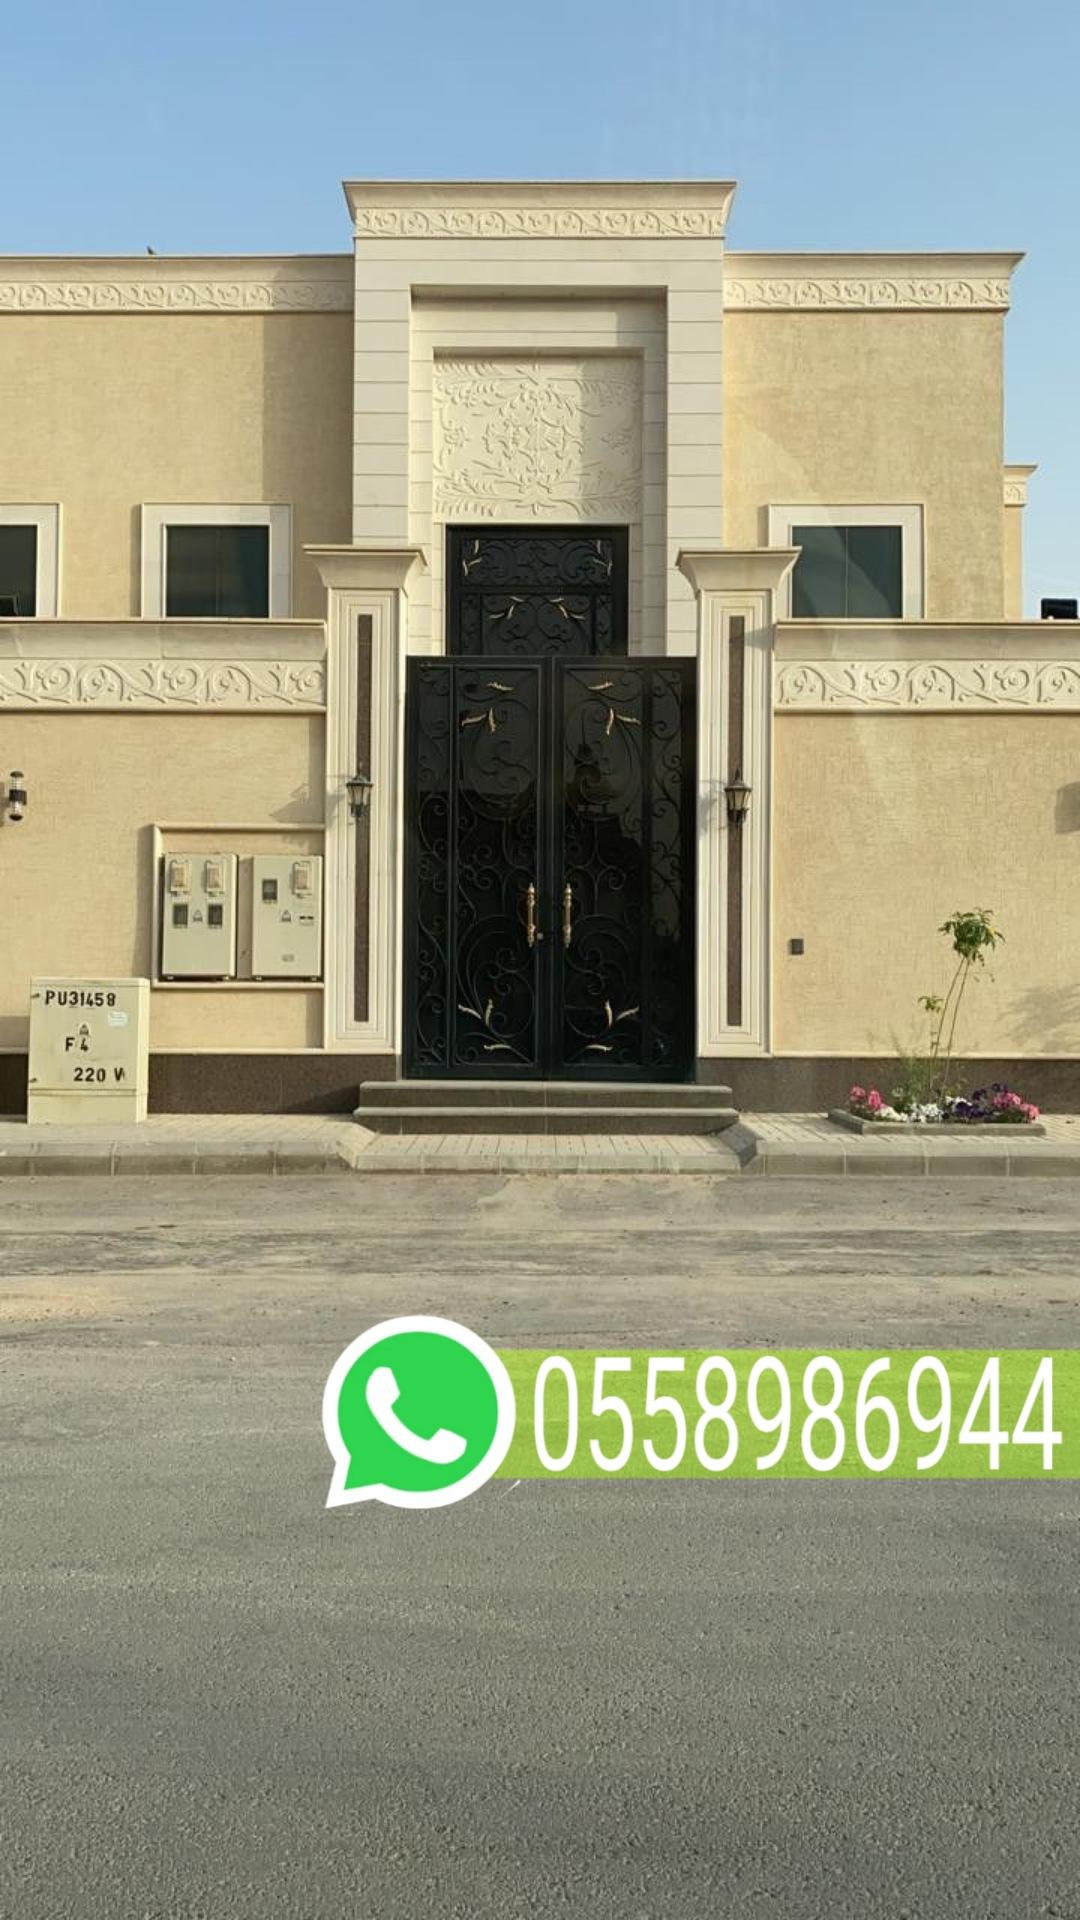 ترميم منزل في العوالي مكة 0558986944 930734368